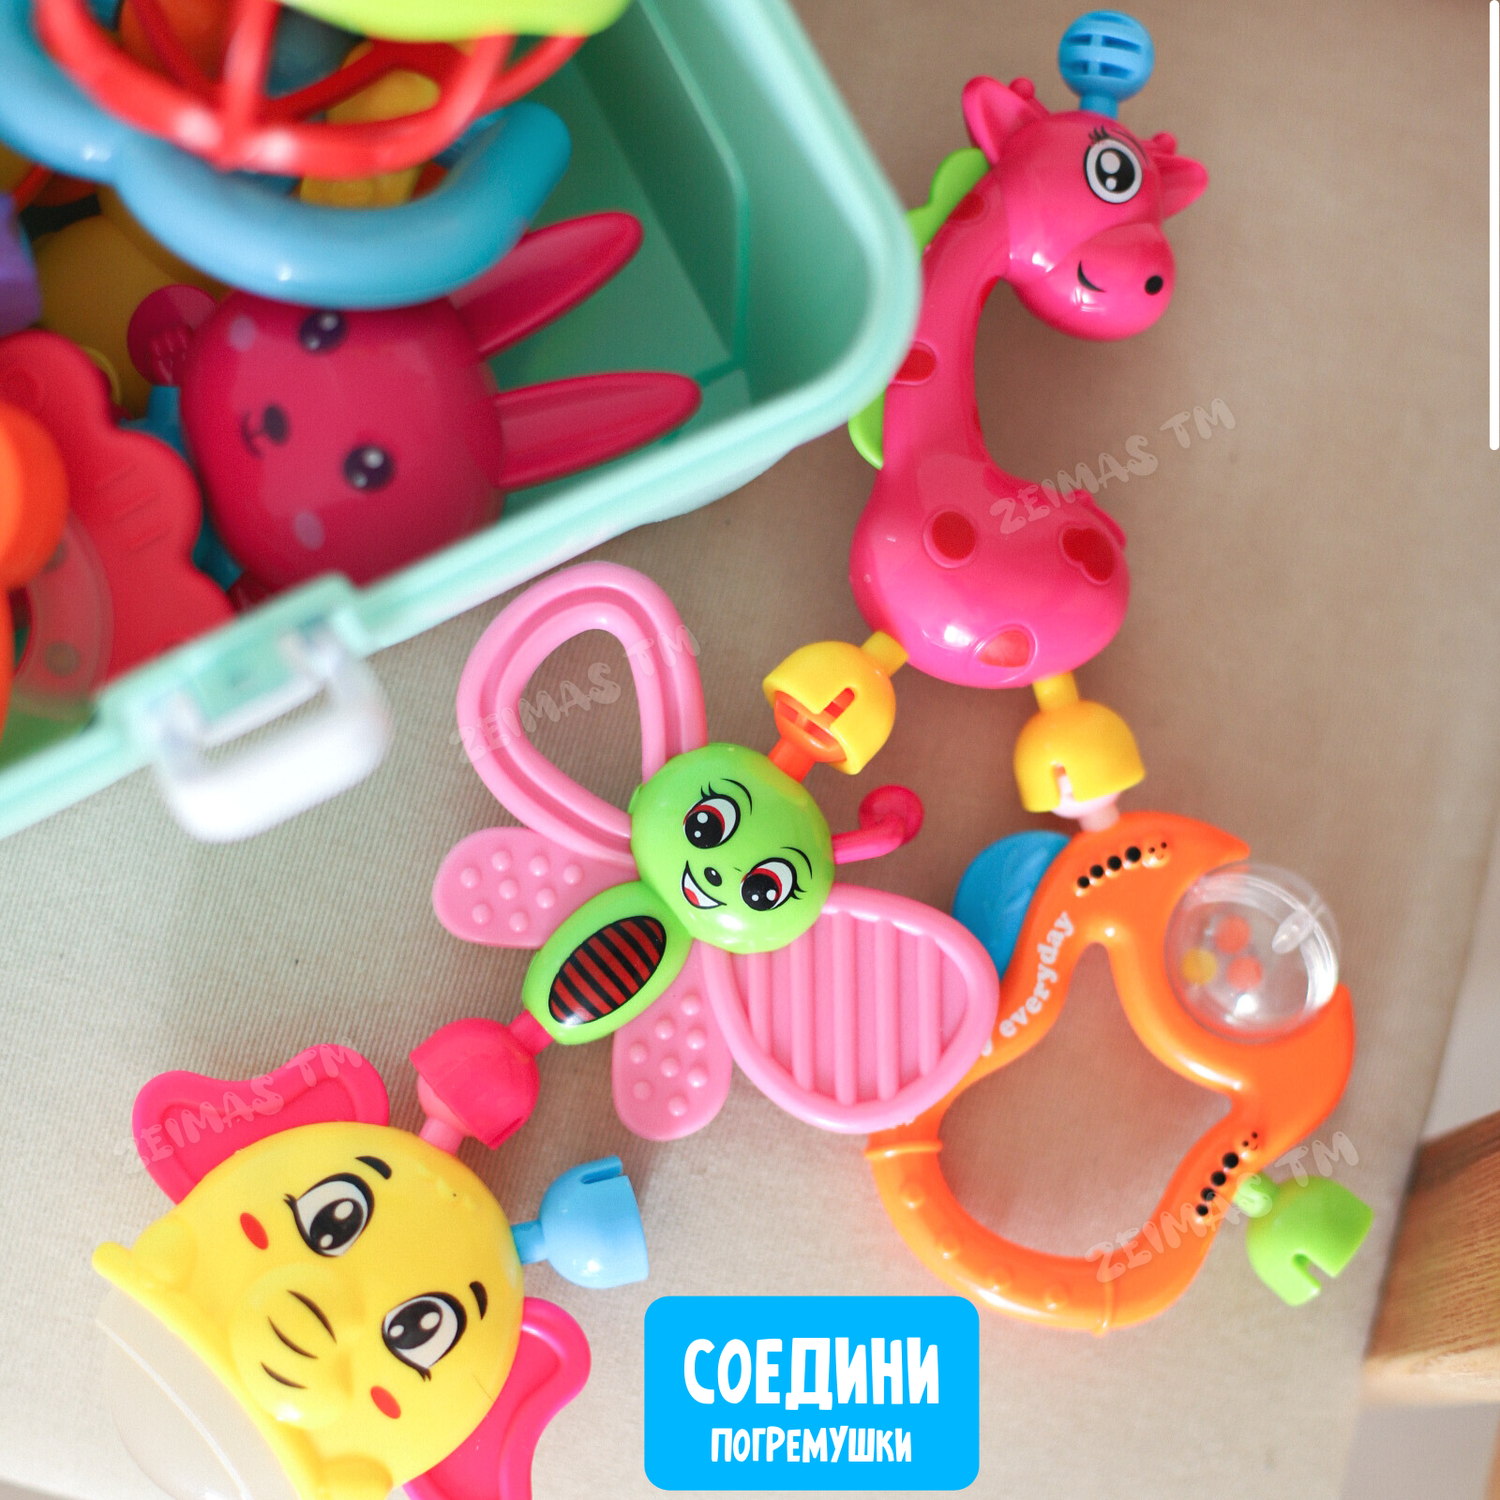 Погремушки и прорезыватели Zeimas развивающие игрушки для новорожденного 0+ 13 шт в кейсе - фото 9